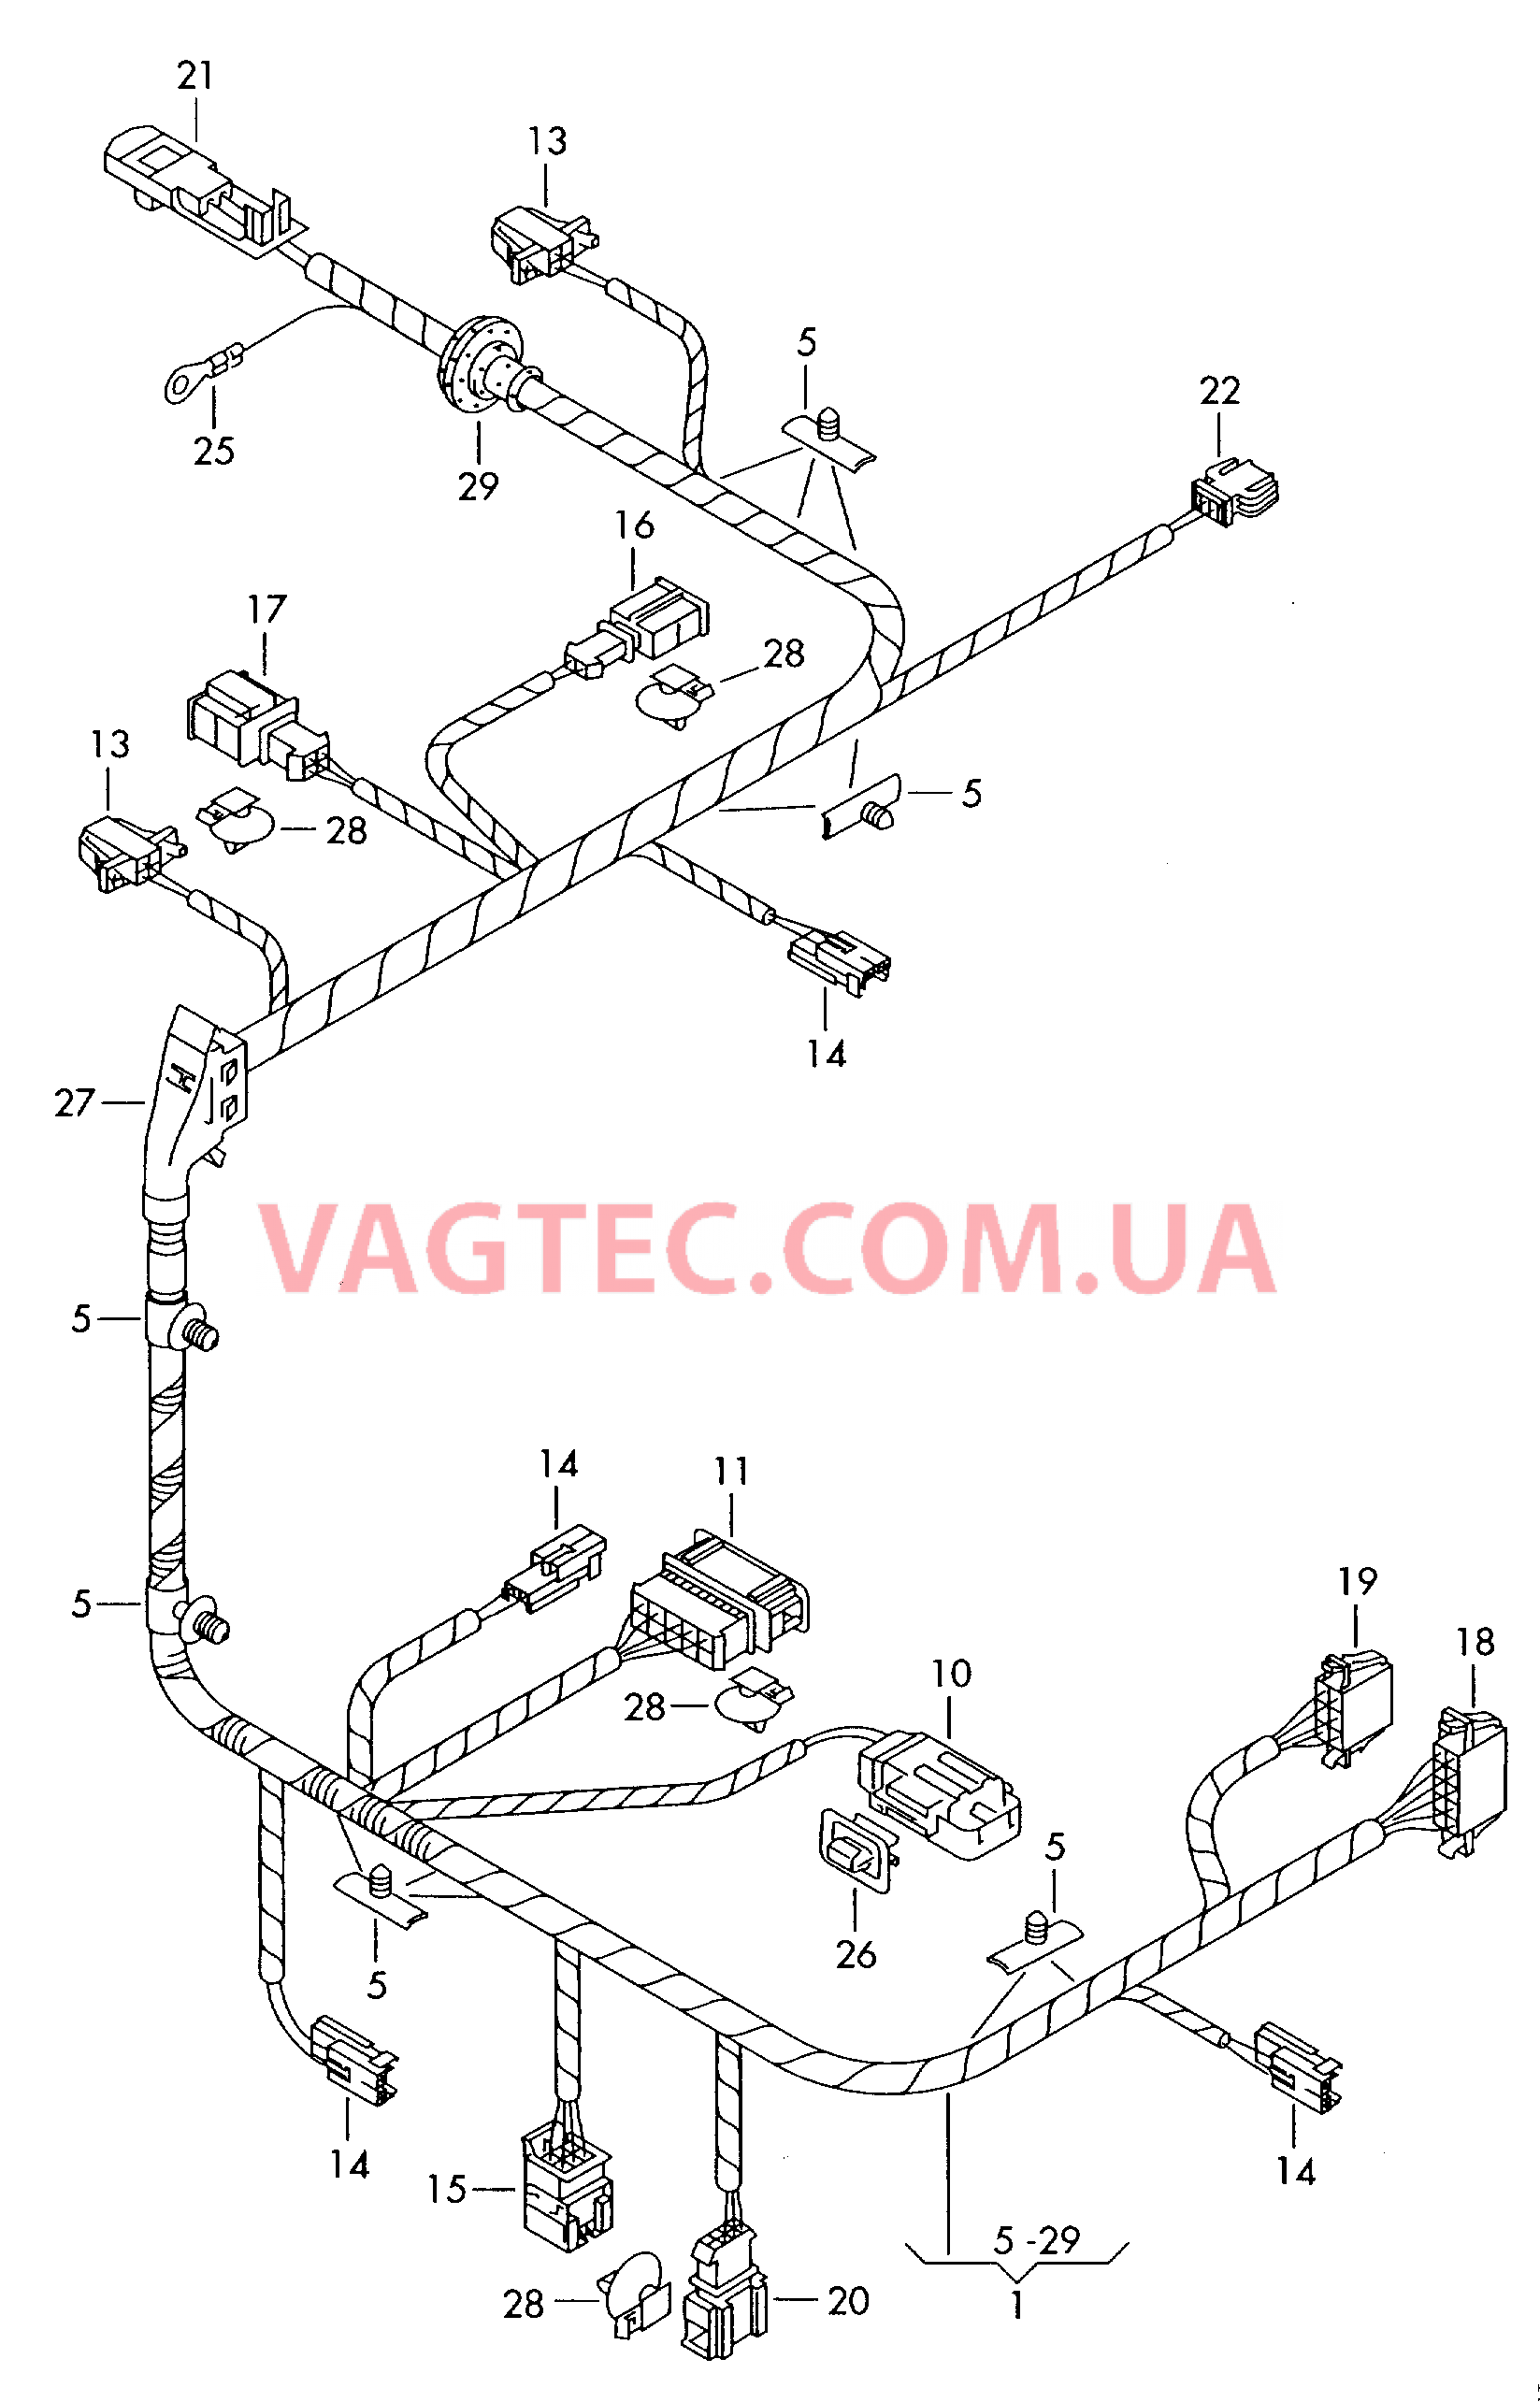 Жгут проводов сиденьяс электрорегулировкой  для а/м с 12-позиционной электрической регулировкой сидений  для VOLKSWAGEN Phaeton 2004